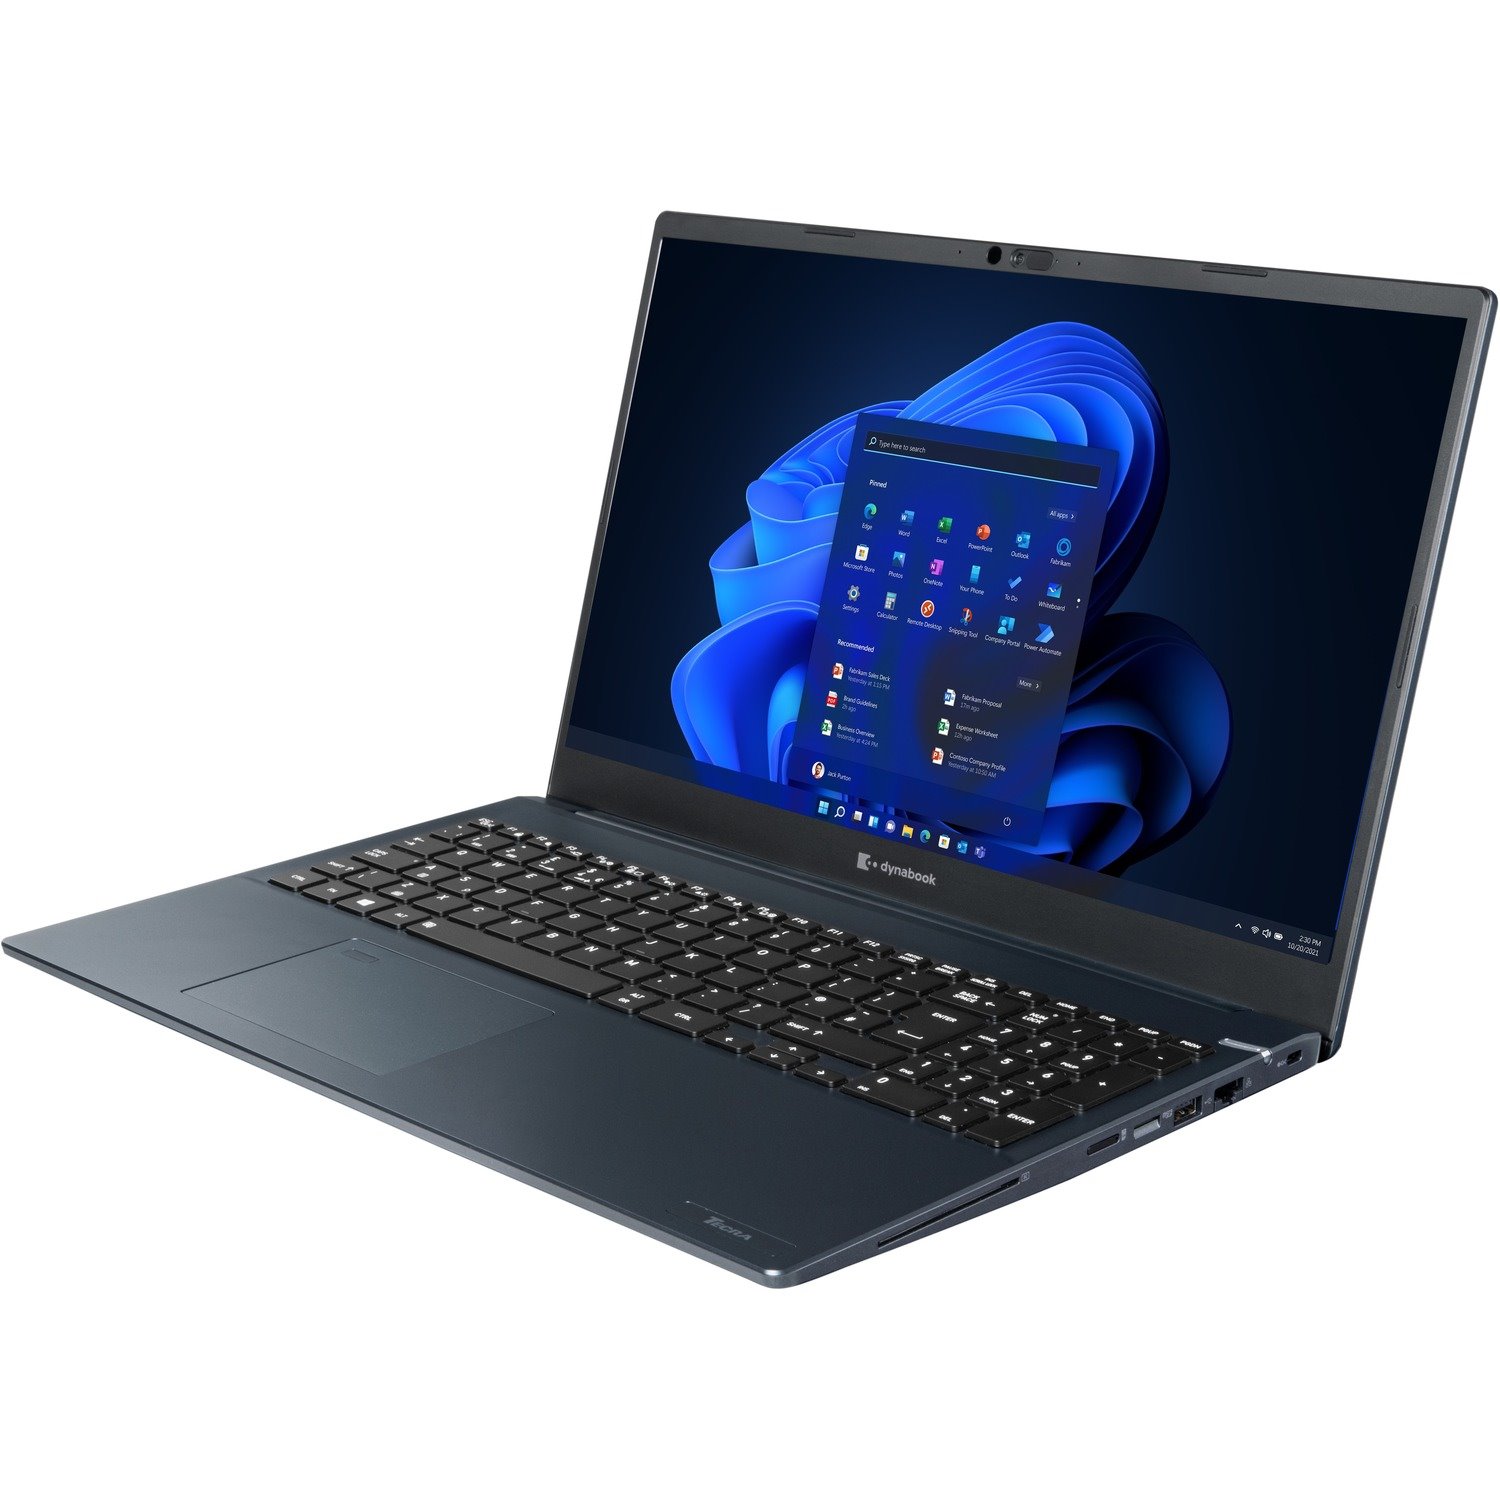 Dynabook Tecra A50-K A50-K1531 15.6" Notebook - Full HD - 1920 x 1080 - Intel Core i5 12th Gen i5-1240P - 8 GB Total RAM - 256 GB SSD - Dark Blue